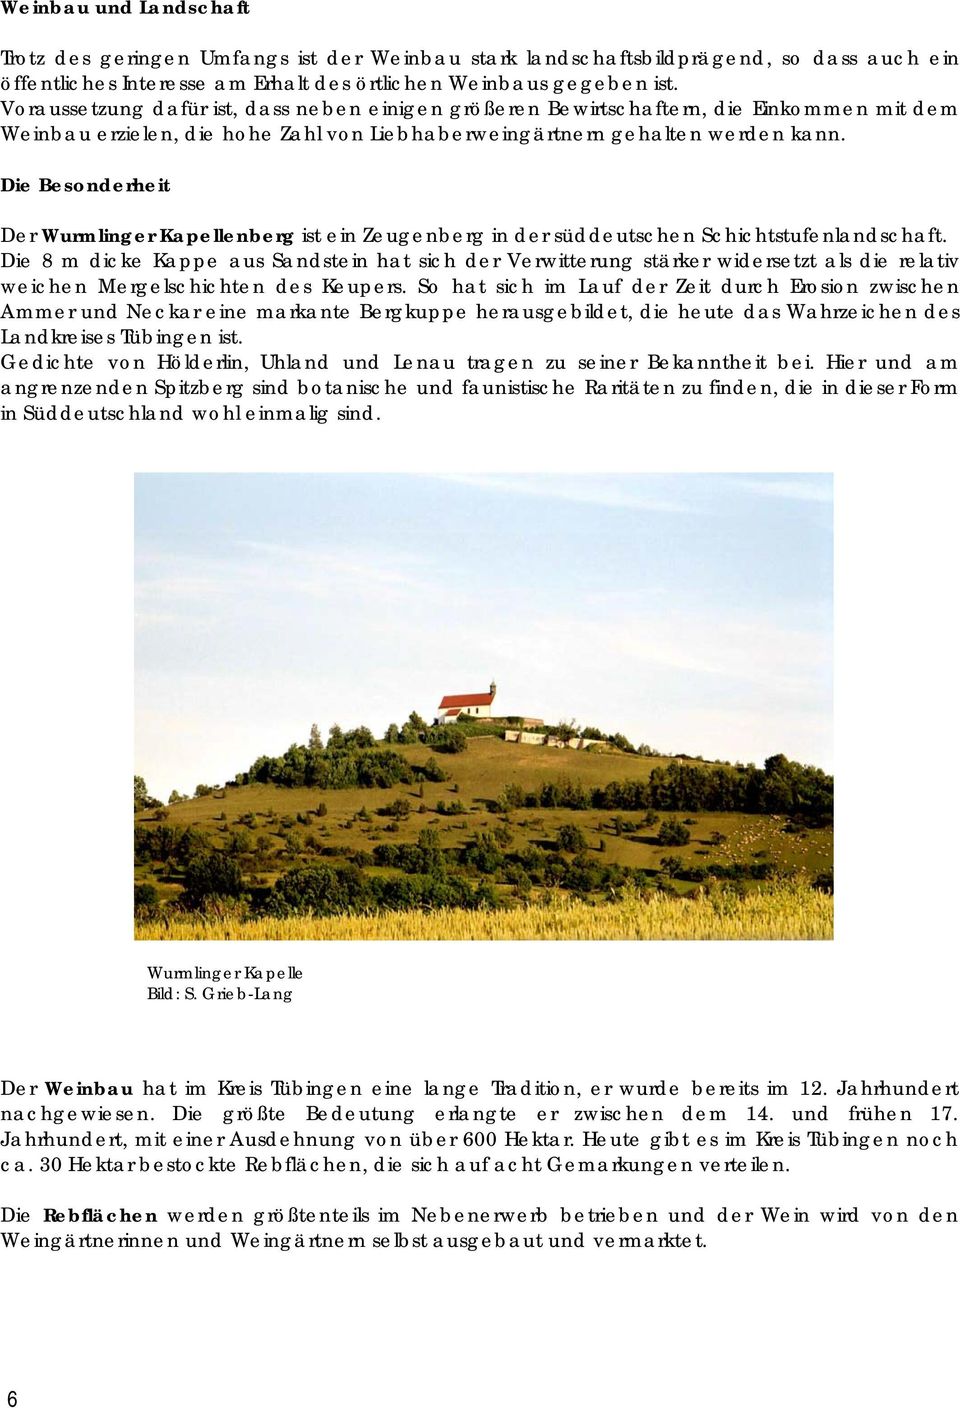 Die Besonderheit Der Wurmlinger Kapellenberg ist ein Zeugenberg in der süddeutschen Schichtstufenlandschaft.